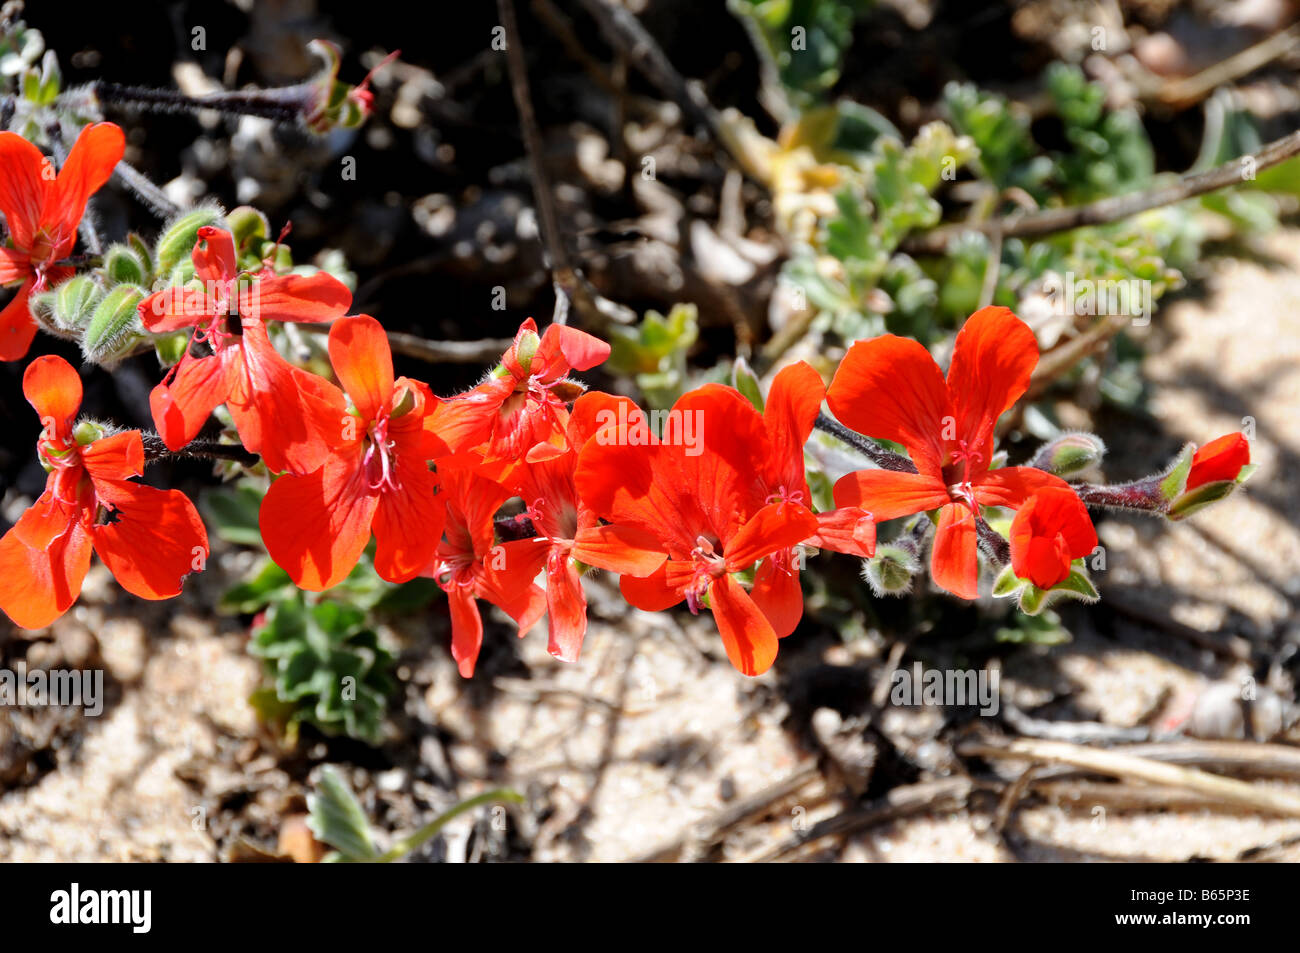 Scarlet Pelargonium fiori da Costa Ovest, Sud Africa Foto Stock